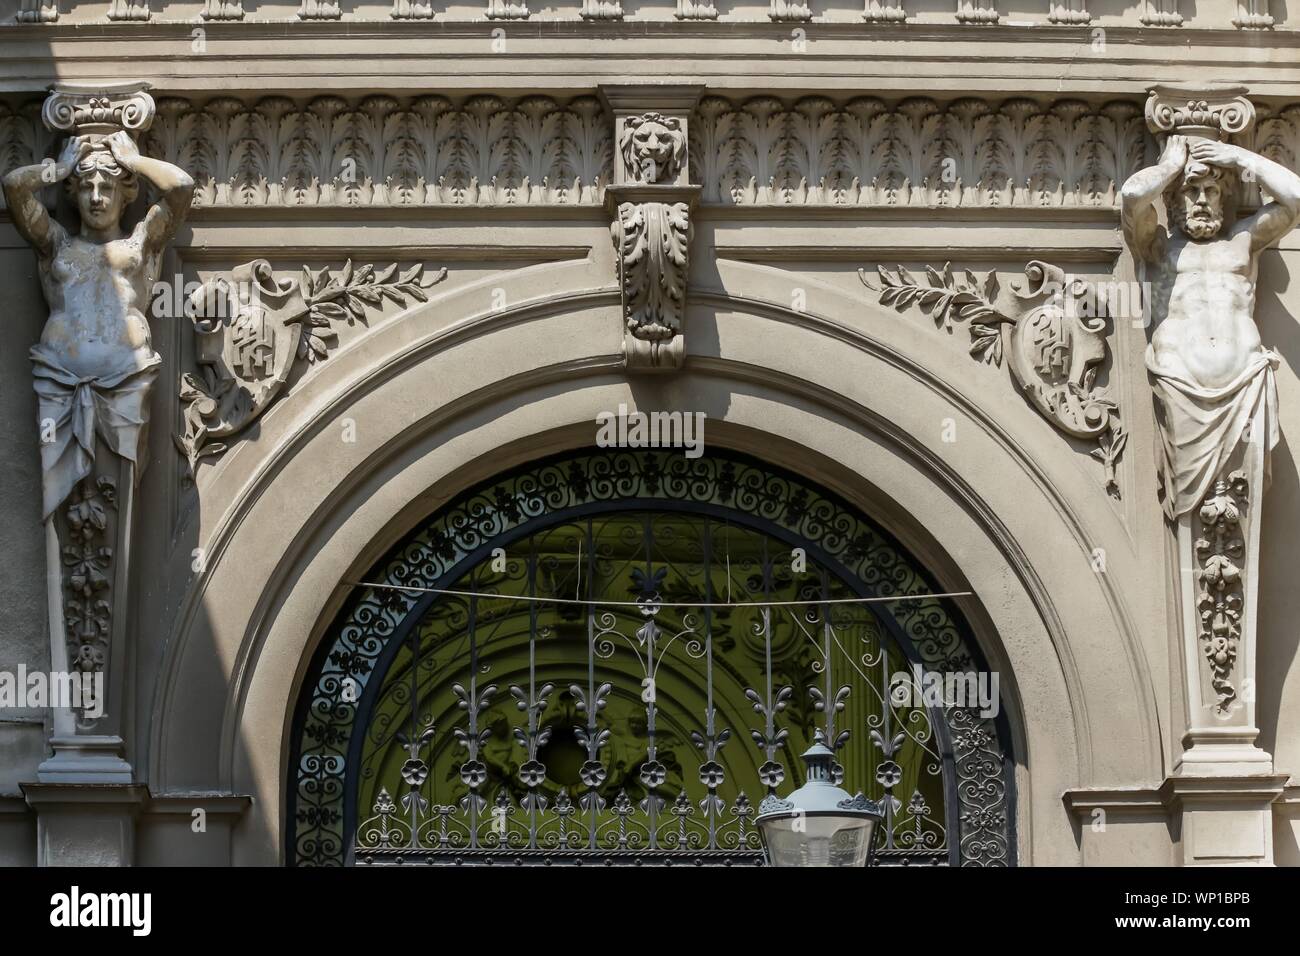 Bukarest, Rumänien - August 08, 2018: Das monumentale Portal mit Statuen aus der Eingang zum Macca-Vilacrosse Passage, erbaut im Jahre 1891, von Doamne Stockfoto